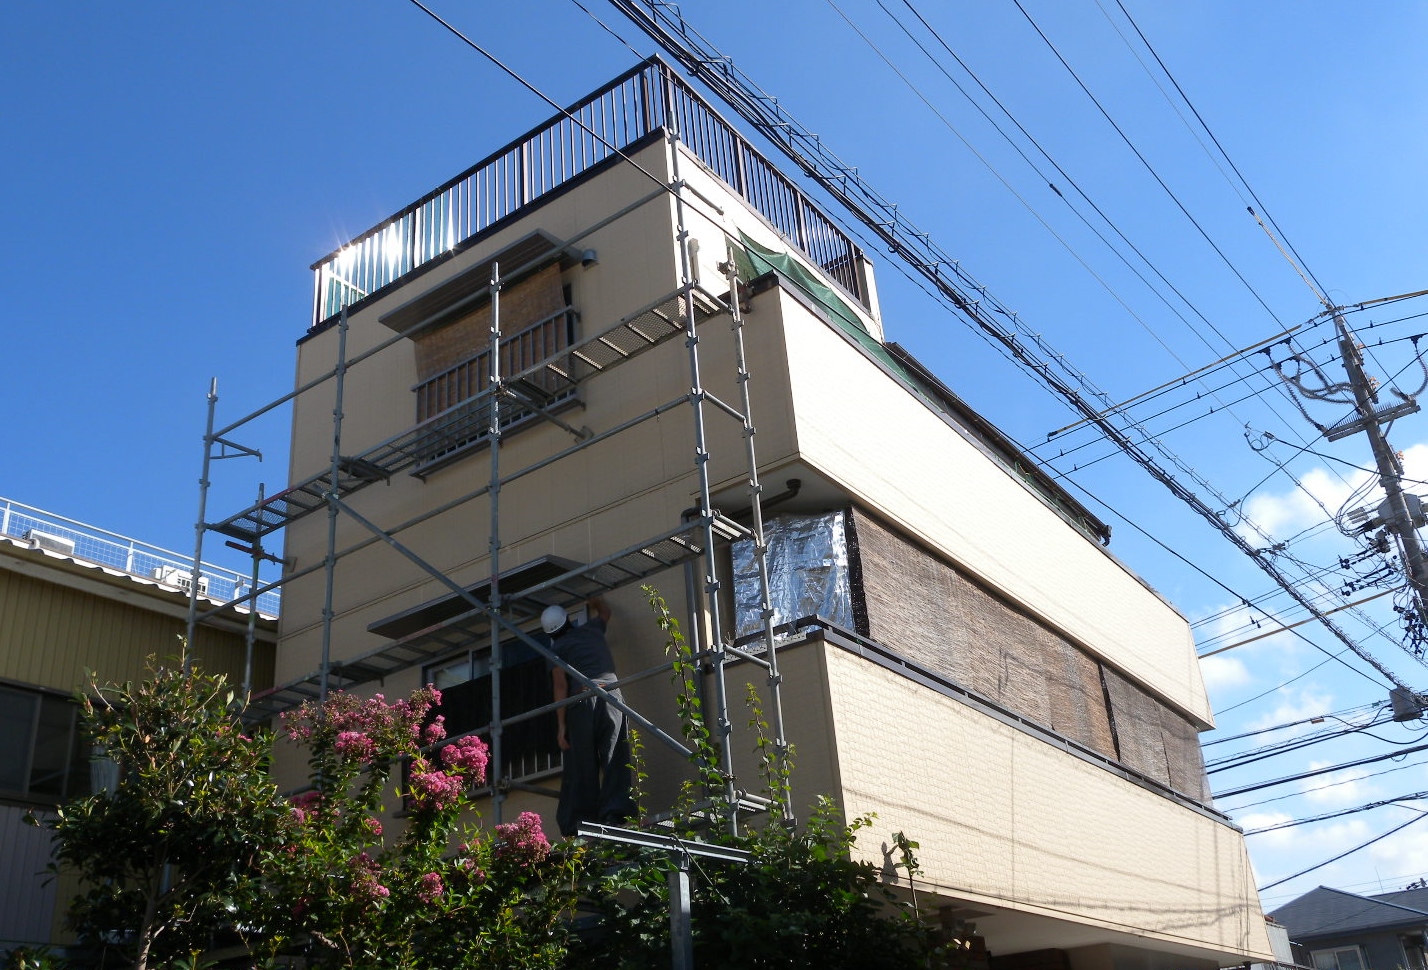 静岡市駿河区、木造３階建て住宅の外壁サイディングからの雨漏りで原因調査をして、外壁の貼り替え工事を行っております